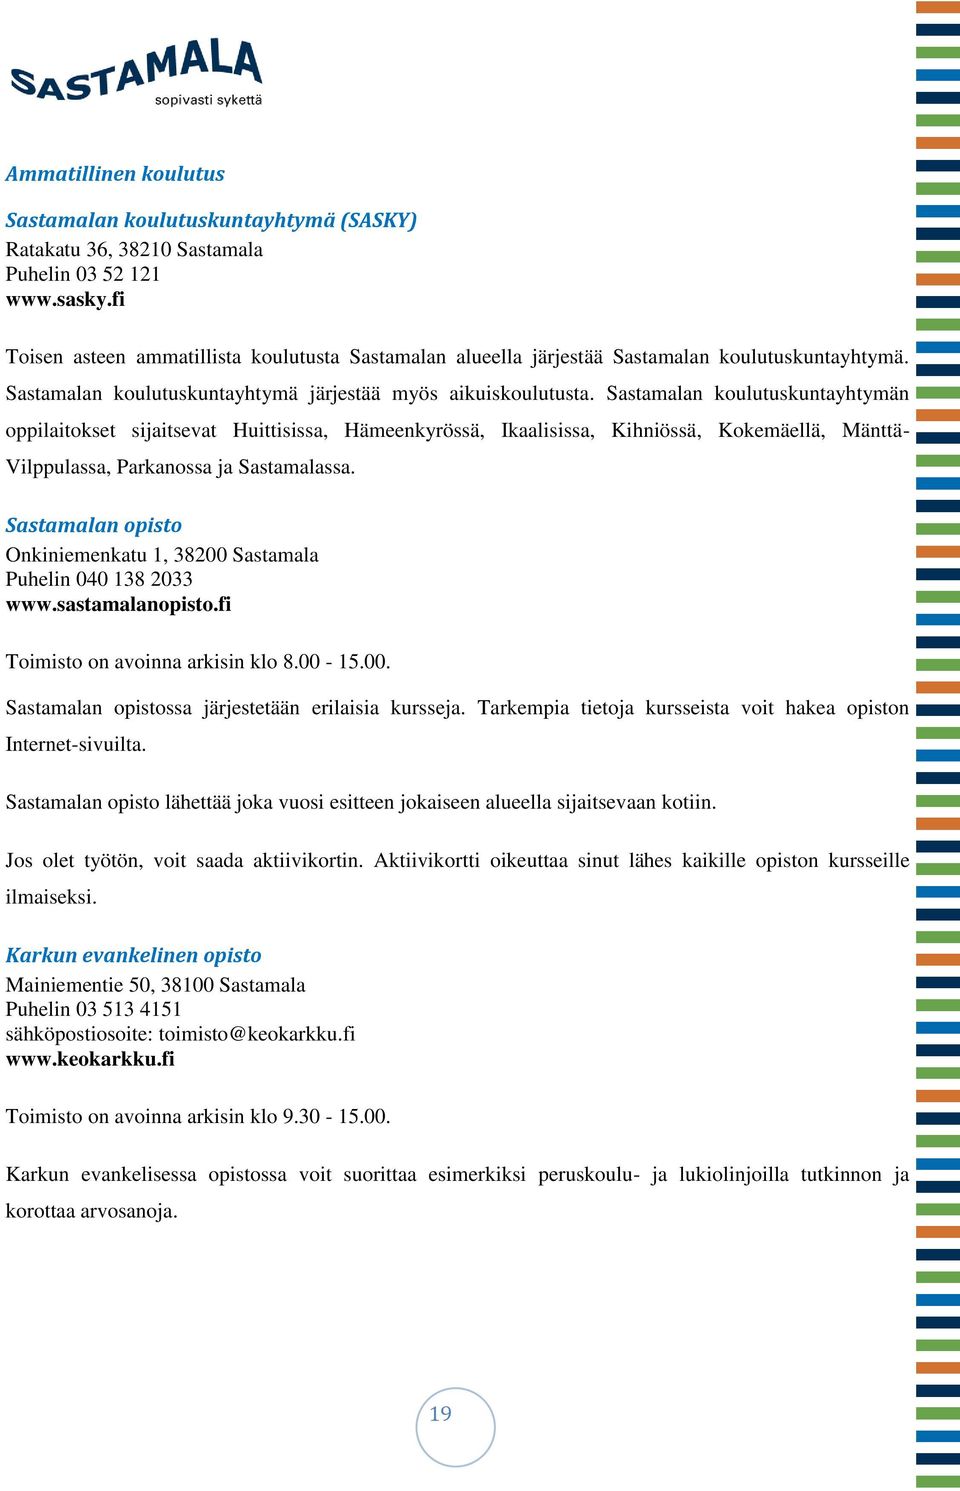 Sastamalan koulutuskuntayhtymän oppilaitokset sijaitsevat Huittisissa, Hämeenkyrössä, Ikaalisissa, Kihniössä, Kokemäellä, Mänttä- Vilppulassa, Parkanossa ja Sastamalassa.